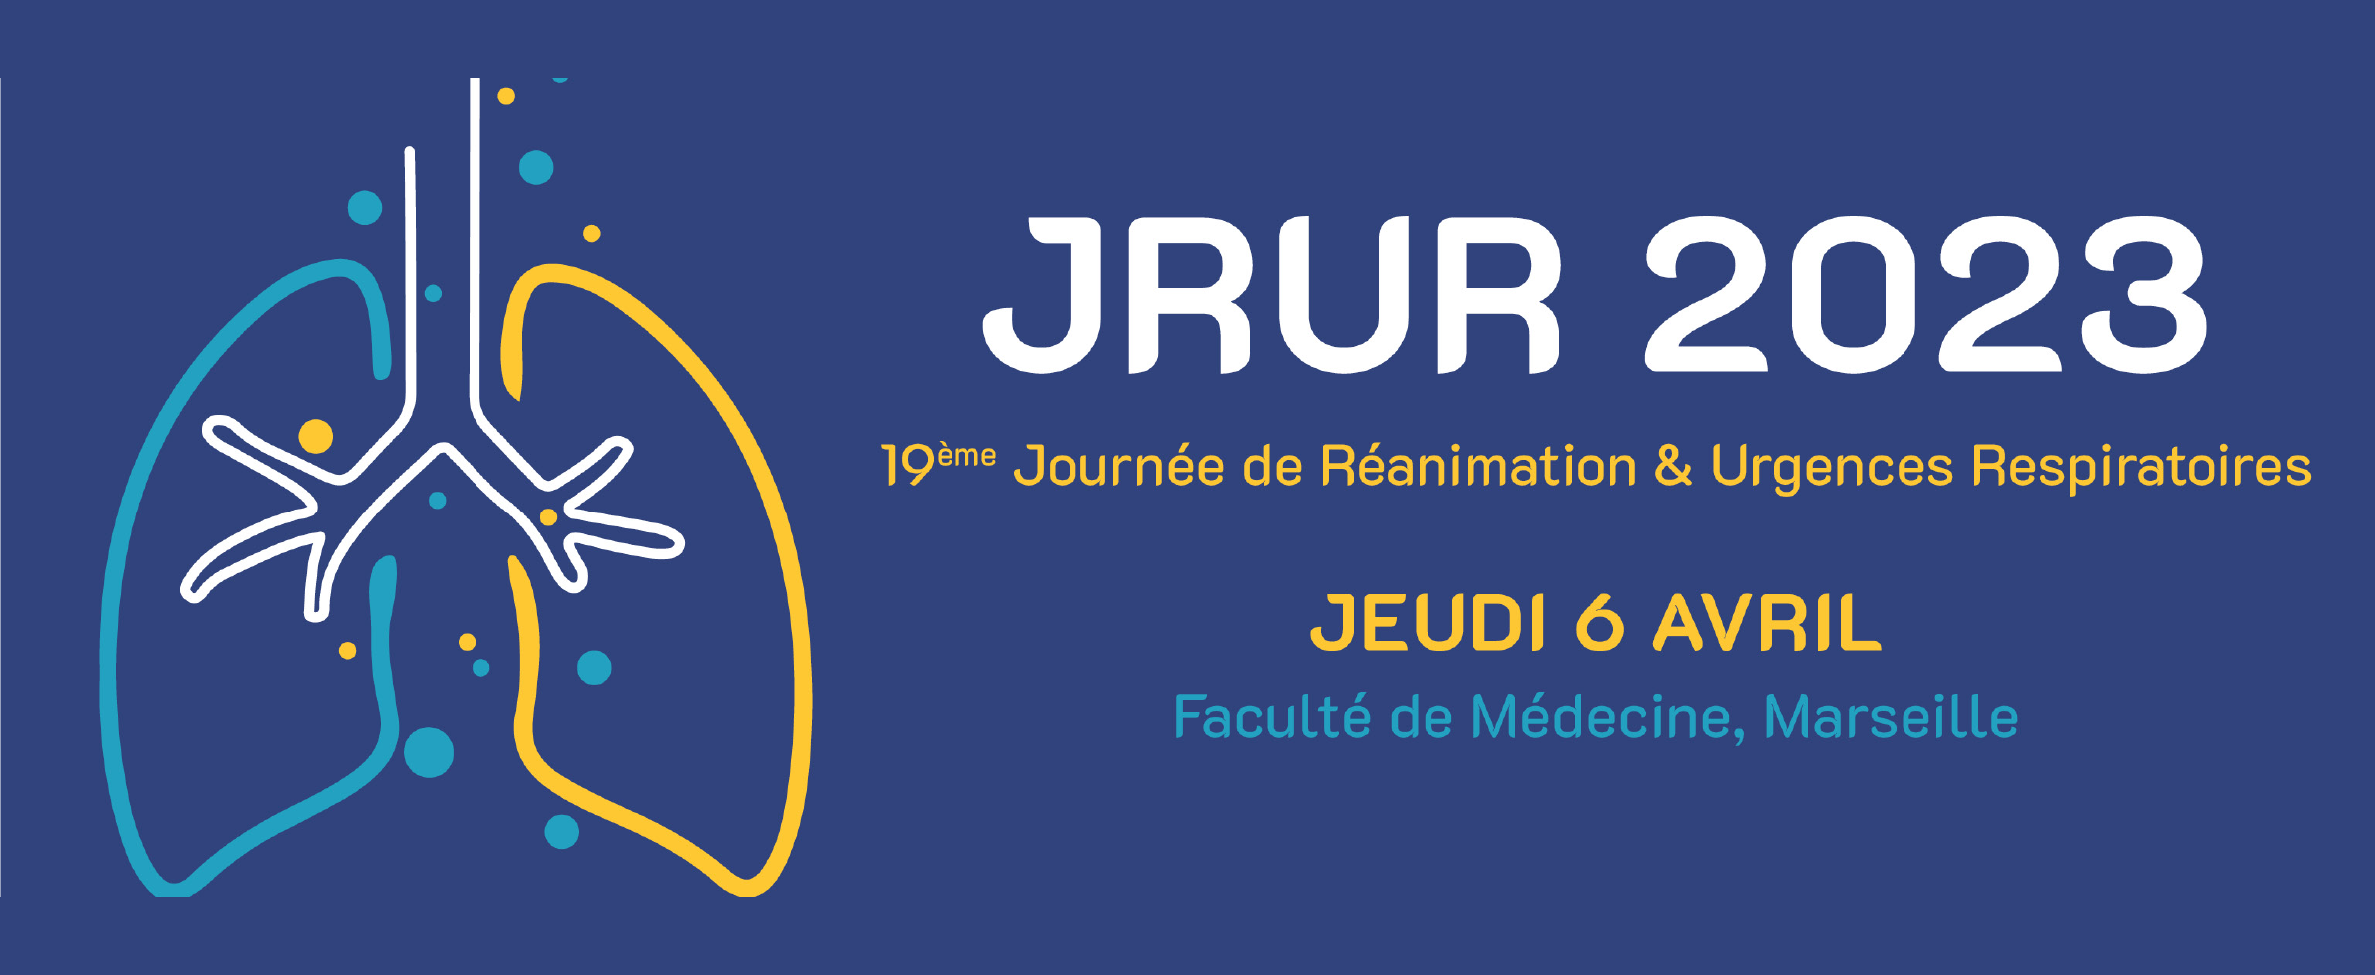 19e Journée de Réanimation & Urgences Respiratoires - JRUR 2023